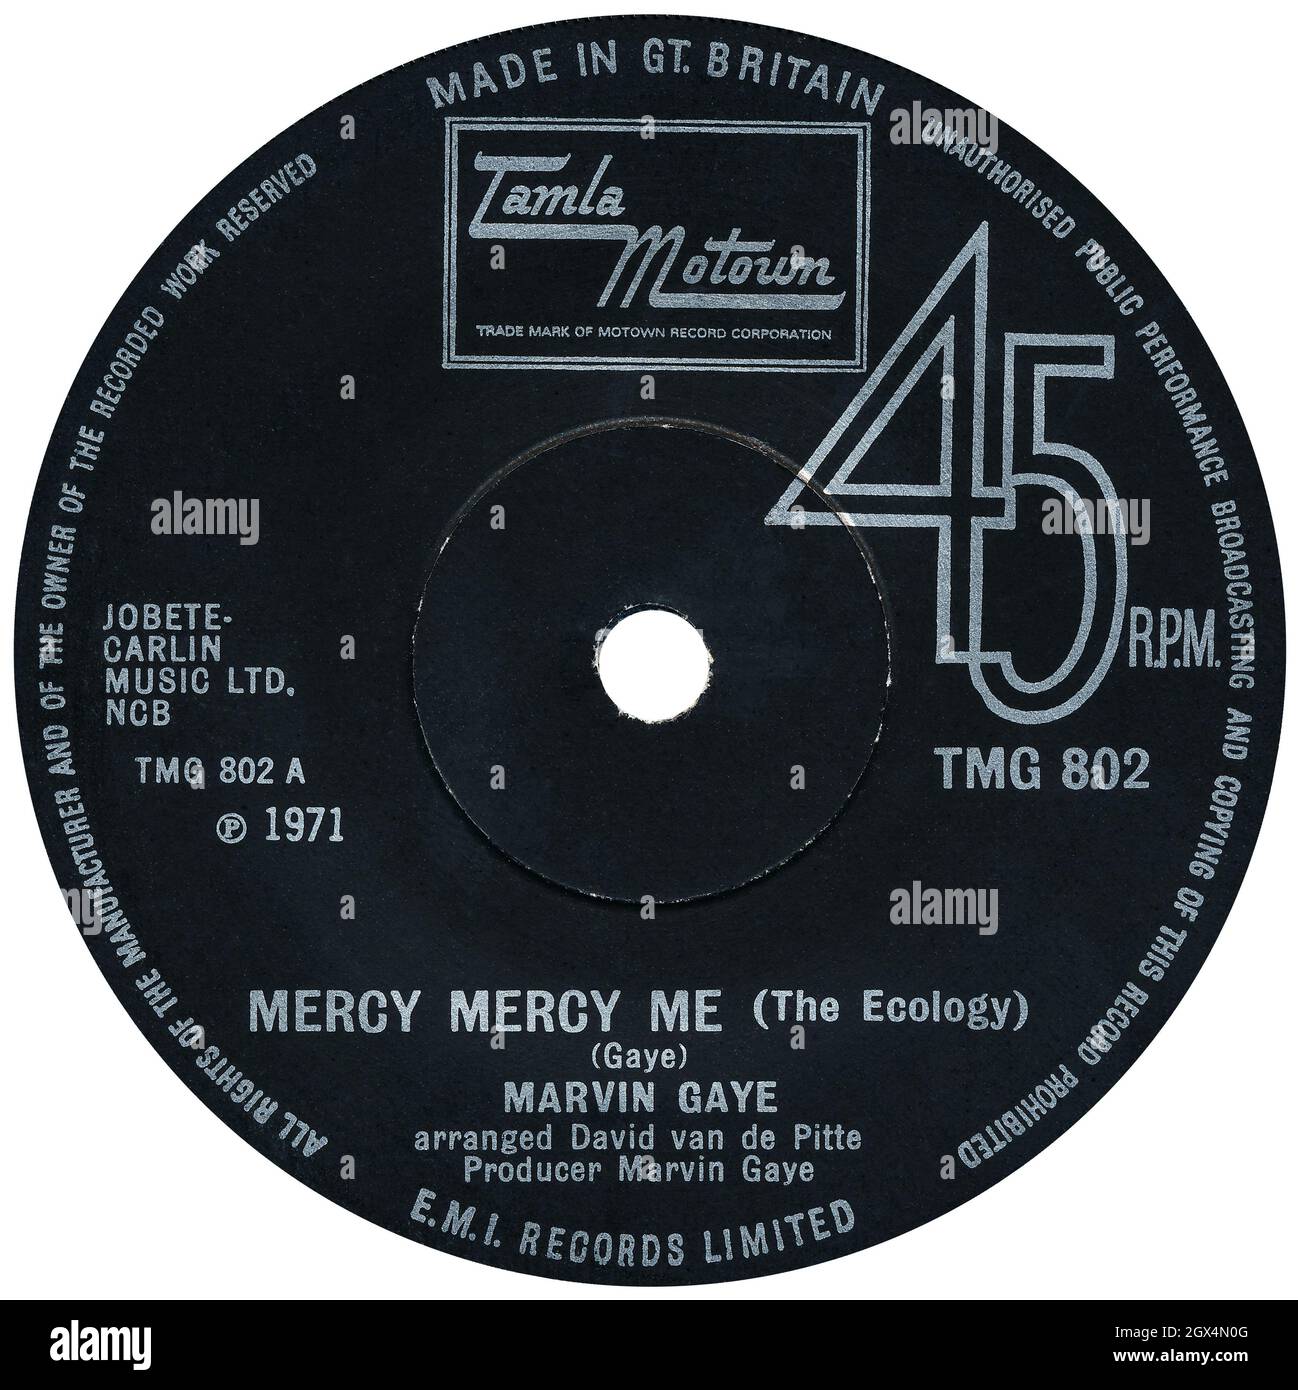 45 RPM 7' britisches Plattenlabel von Mercy Mercy Me (The Ecology) von Marvin Gaye. Geschrieben von Marvin Gaye, arrangiert von David Van Pitte und produziert von Marvin Gaye. Veröffentlicht im Februar 1972 auf dem Tamla Motown Label. Stockfoto